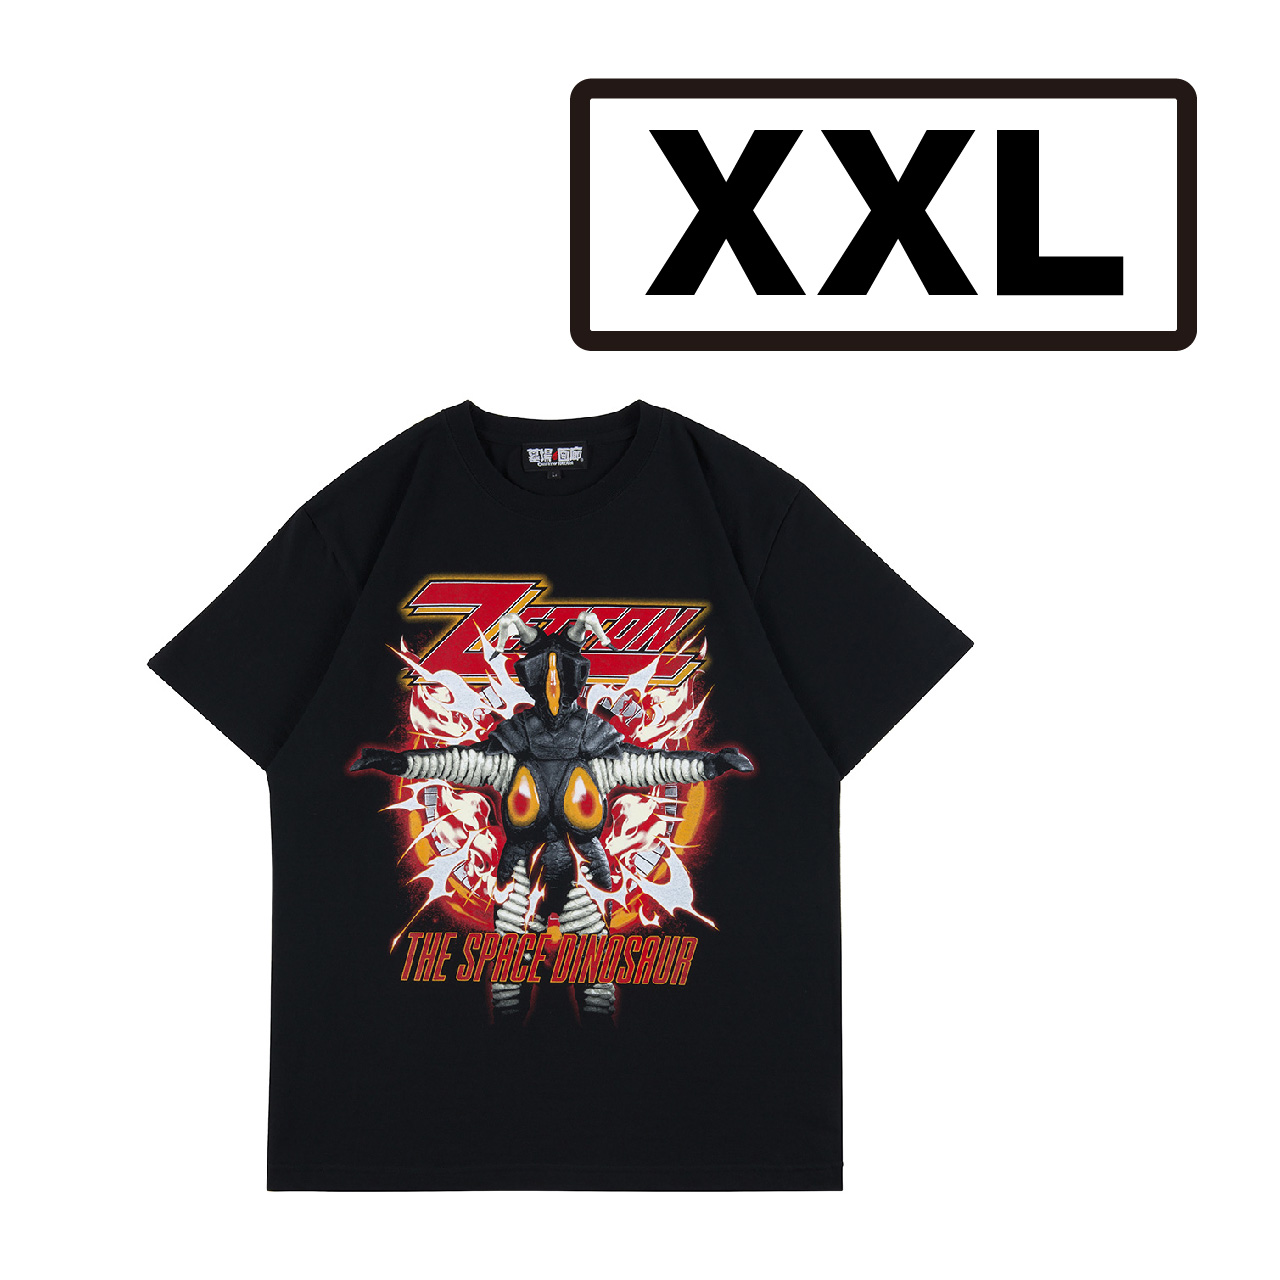 ウルトラマン/ゼットンTシャツ 墓場のメタルシャツシリーズ/XXL/ブラック